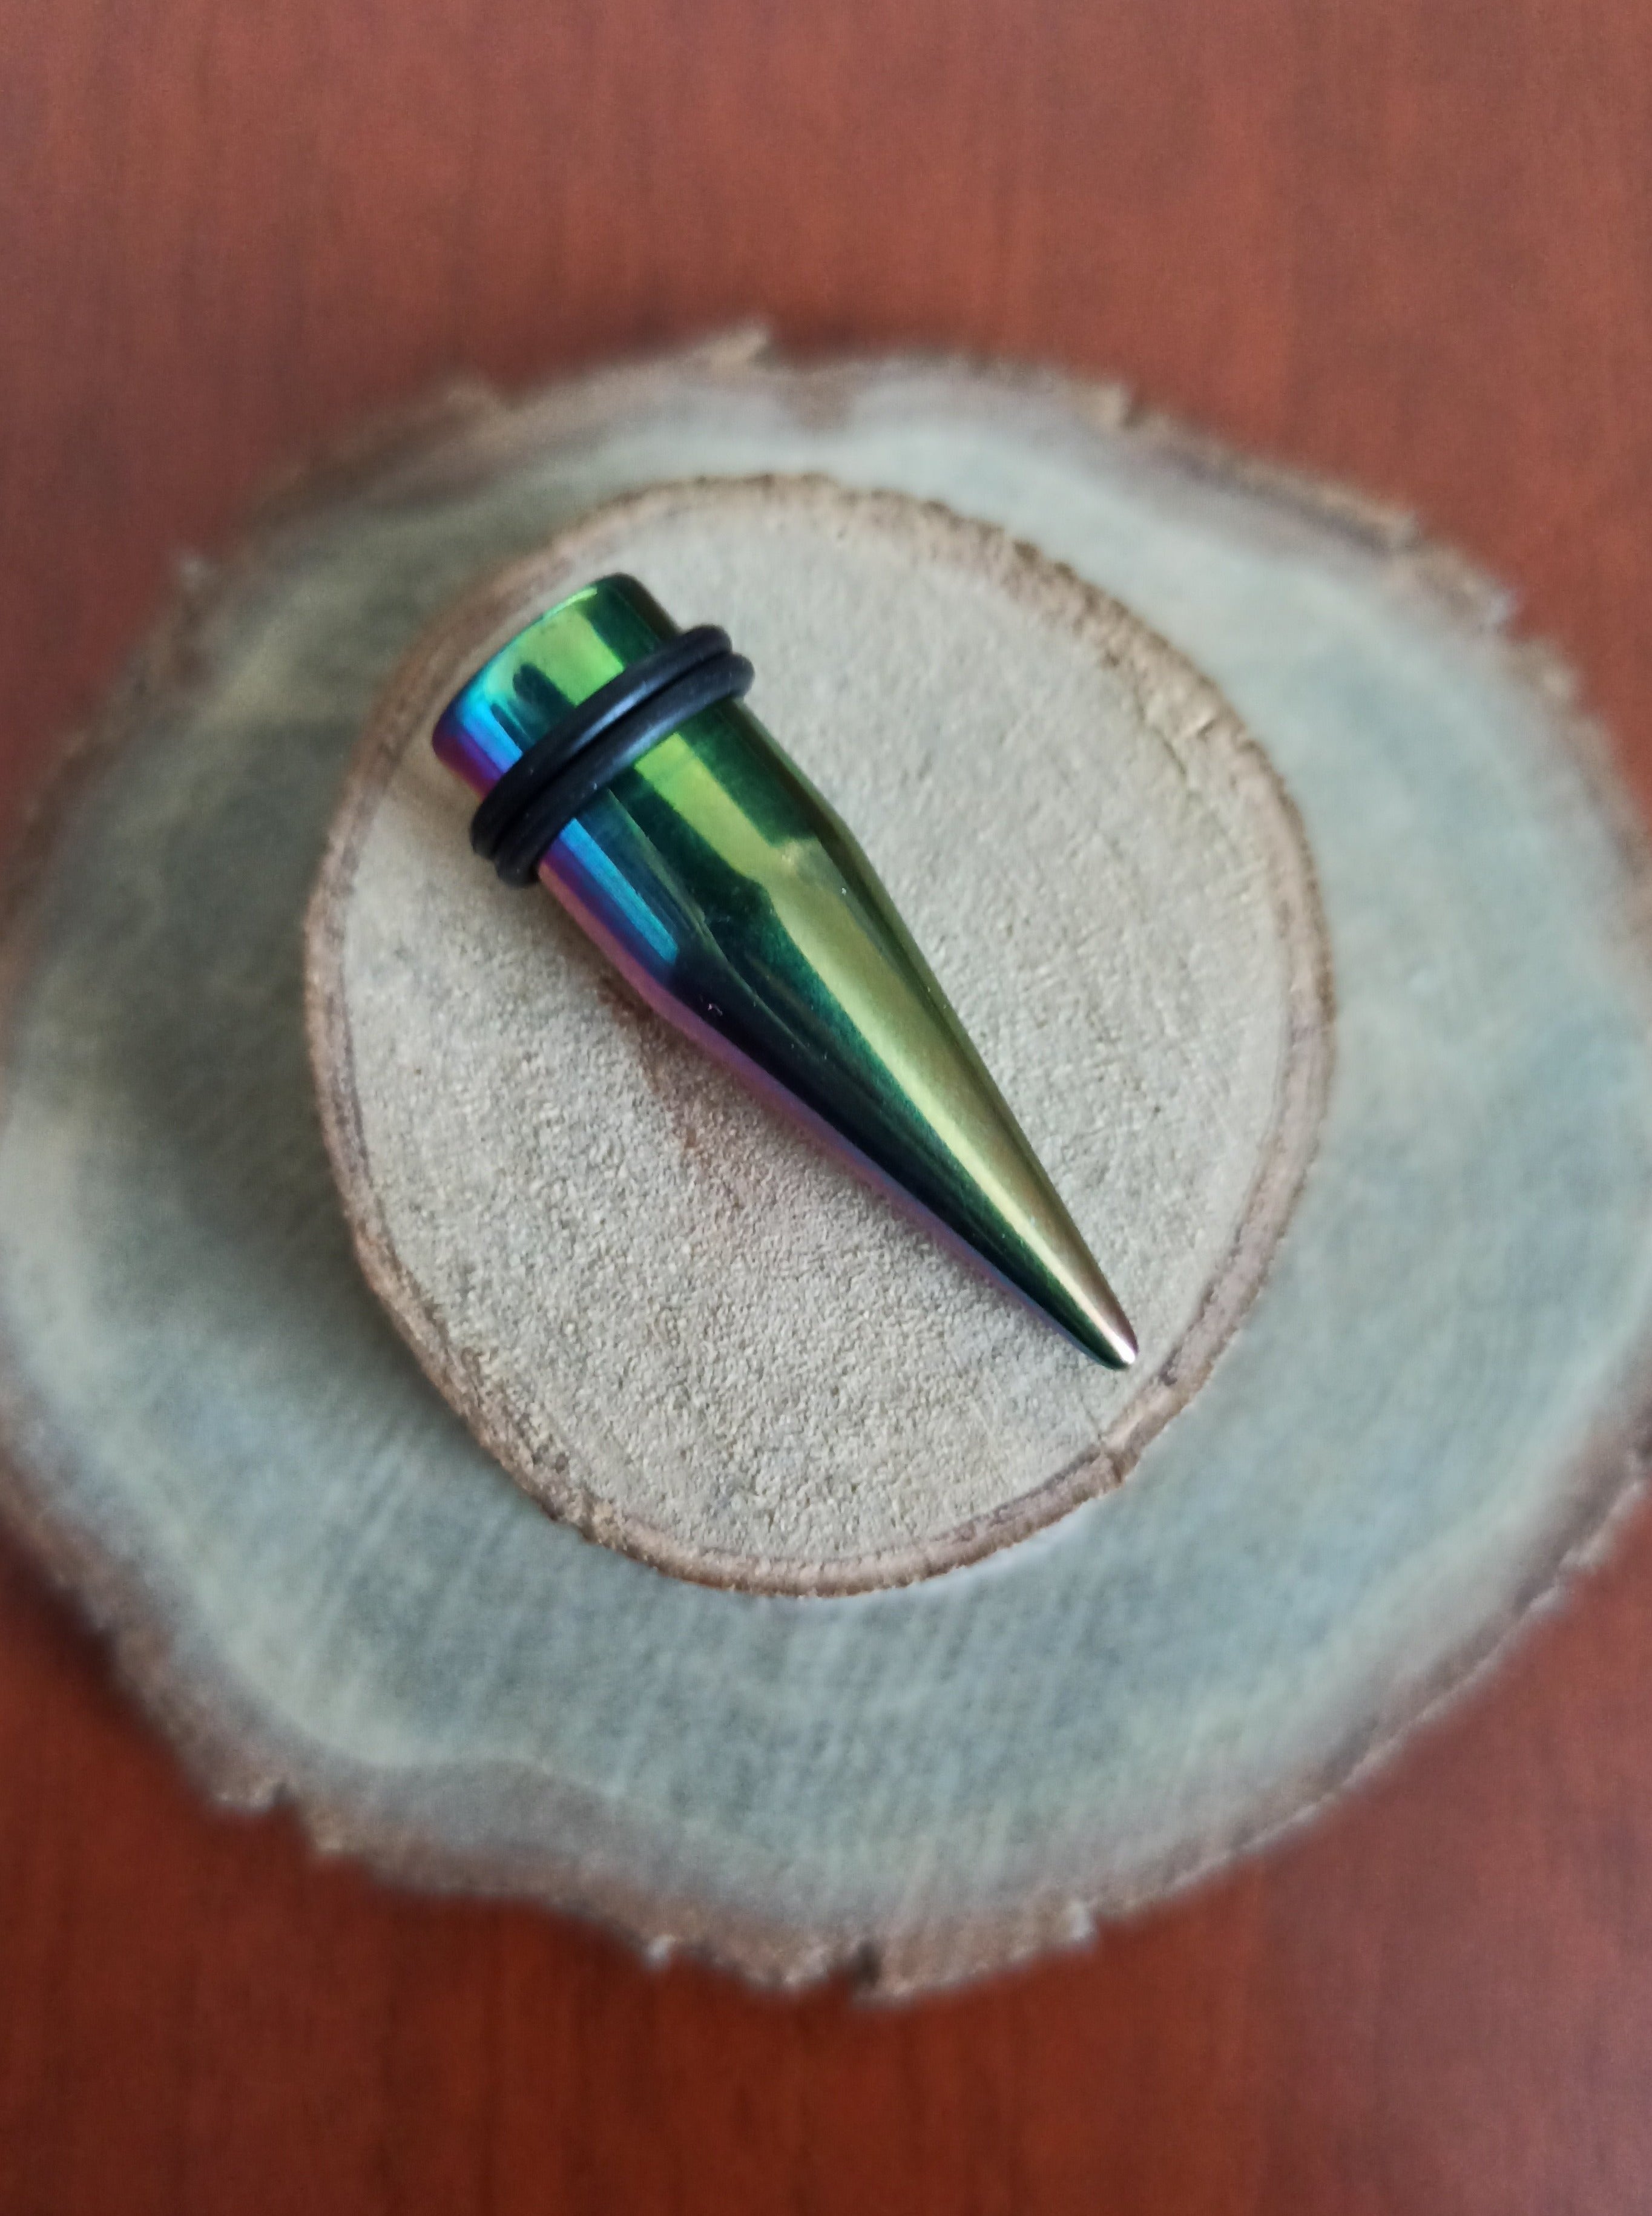 Expansor Acero Inoxidable - Estaca Tornasol (Rainbow) (1,6mm a 10mm)